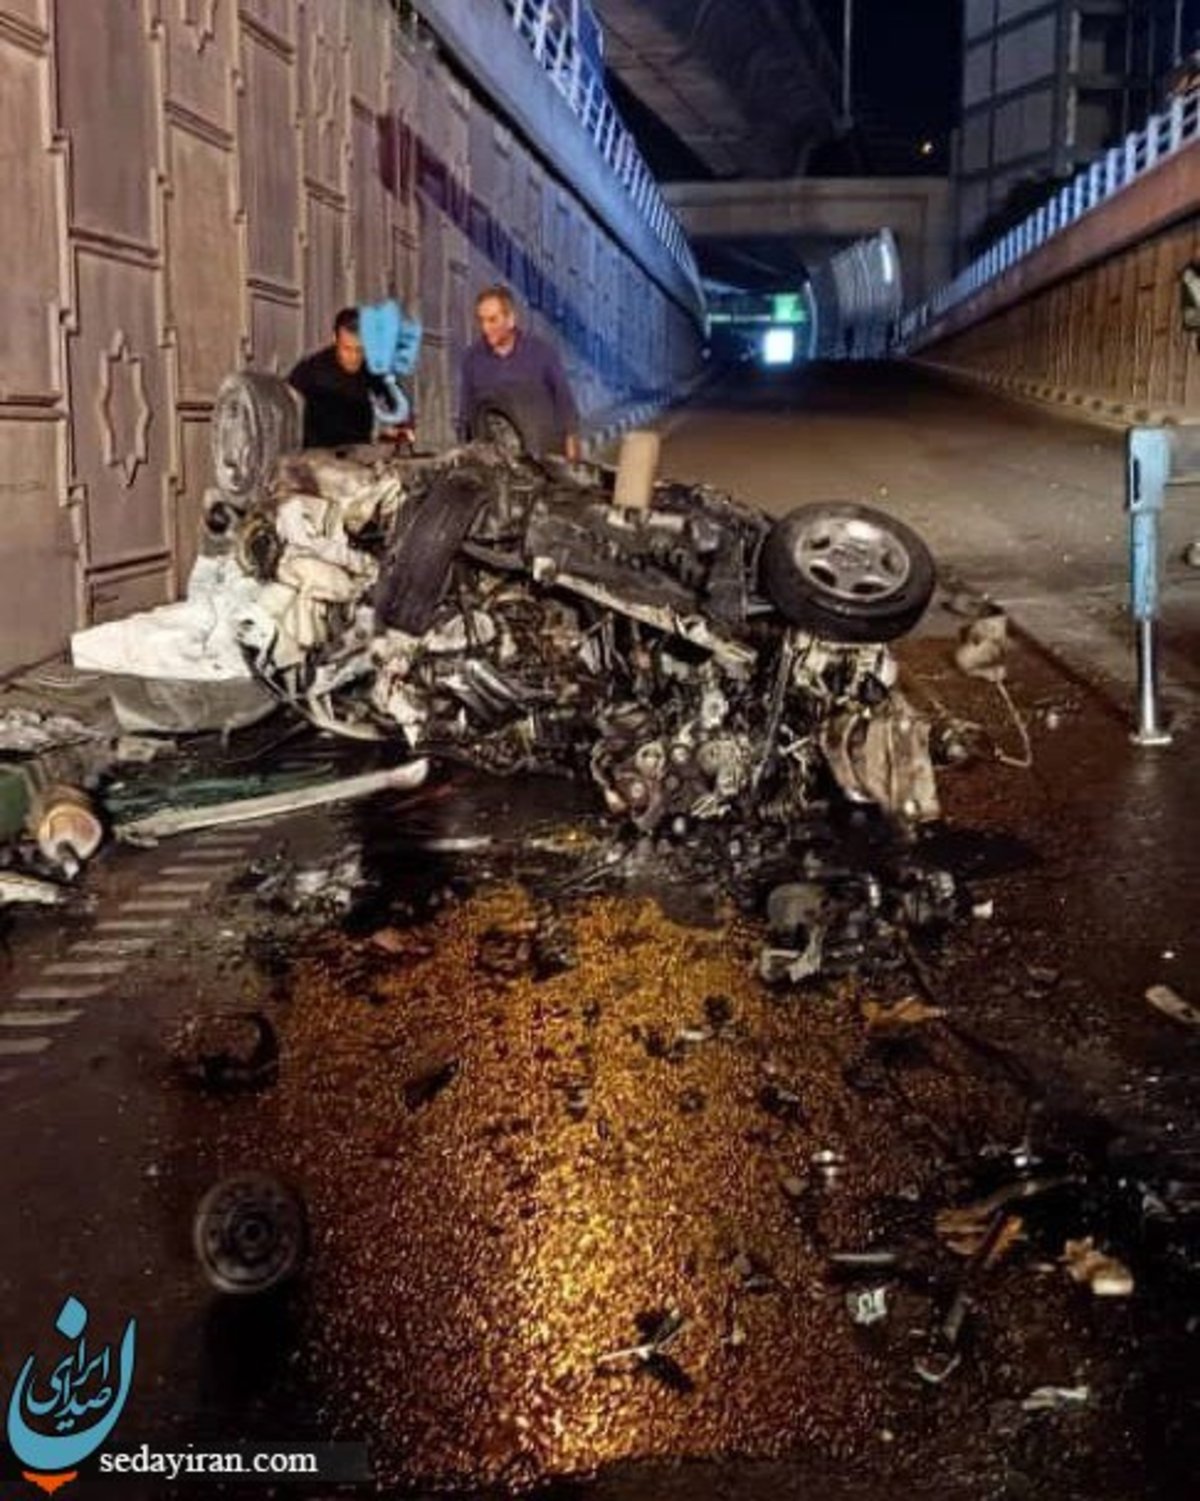 (تصاویر) سقوط هولناک خودرو پژو از پل صدر تهران   2 کشته و یک مصدوم وخیم